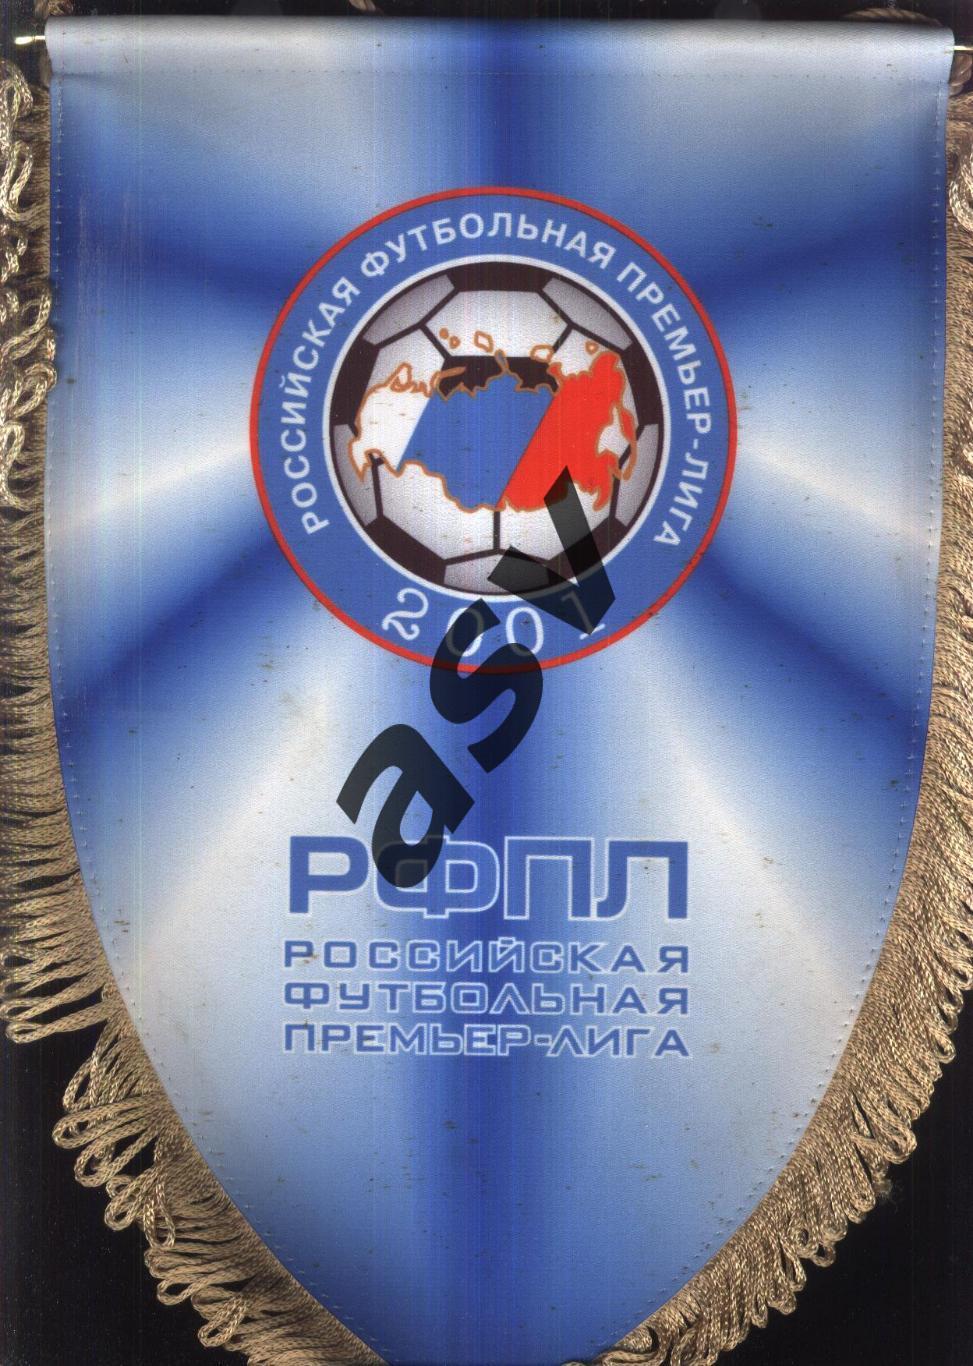 РФПЛ / Российская футбольная Премьер-Лига